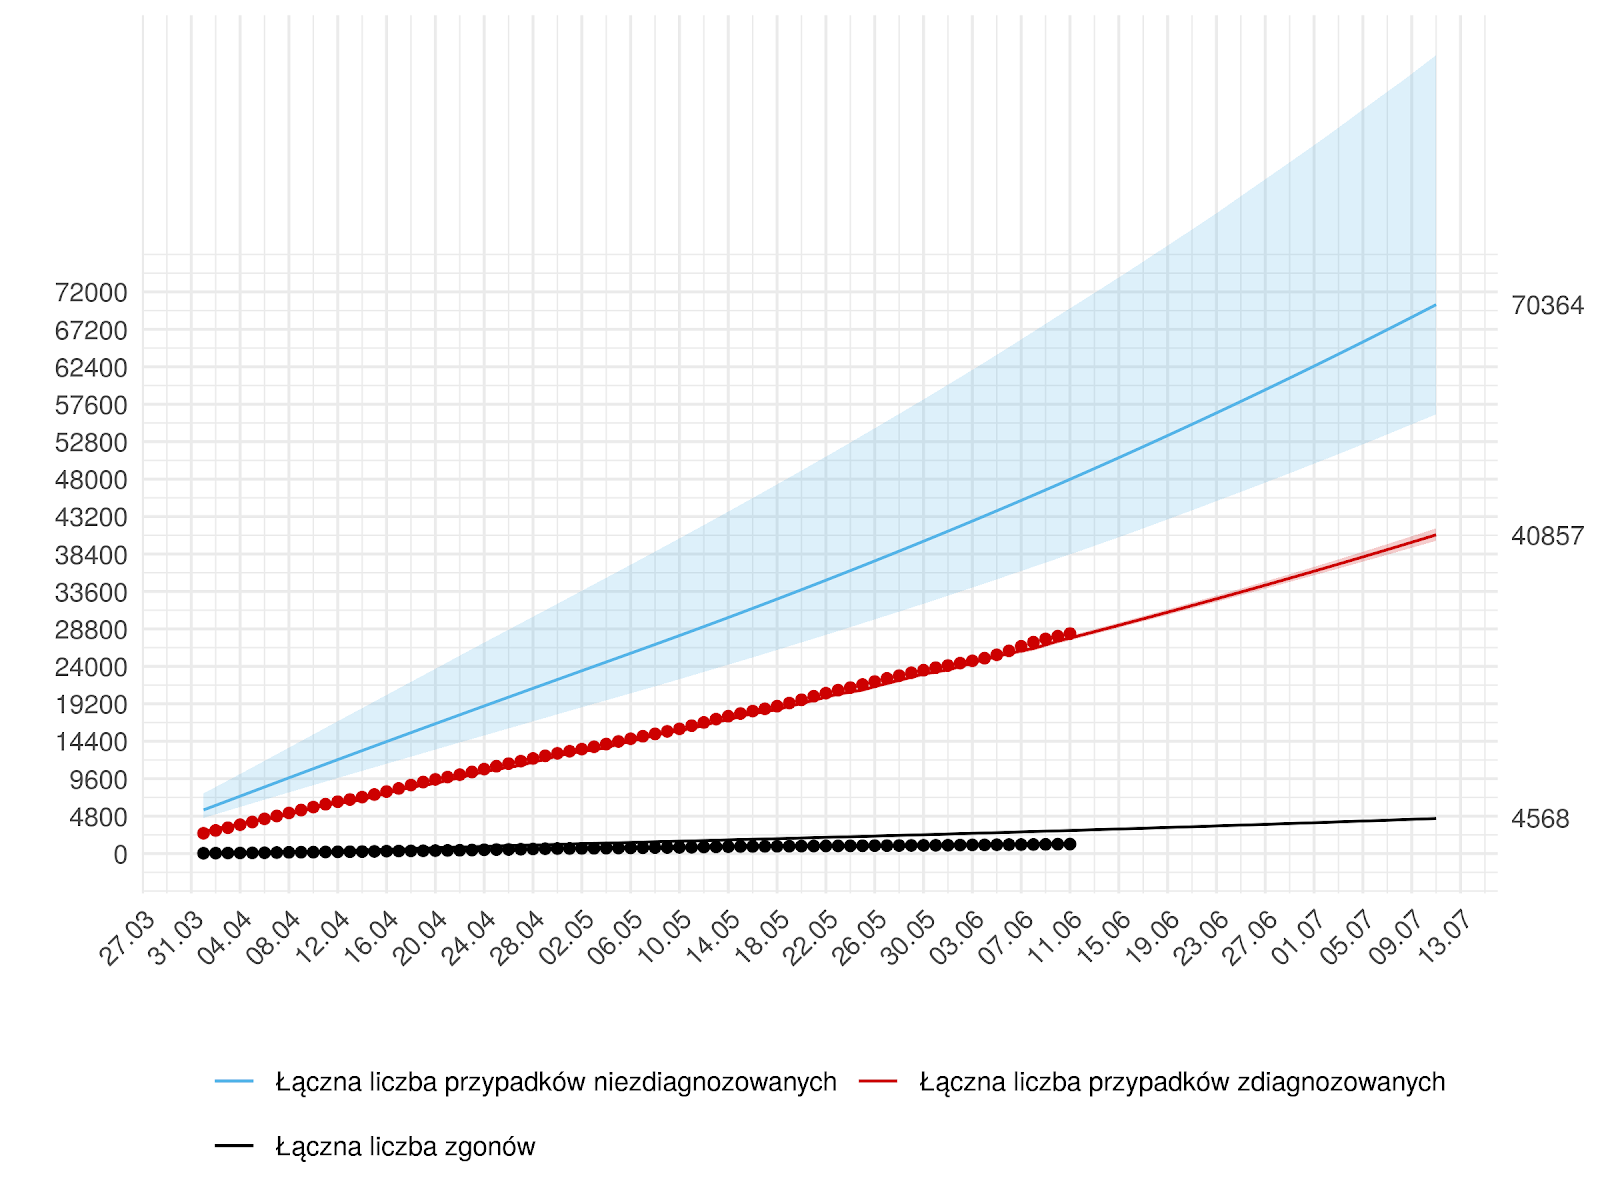 Średnioterminowa prognoza łącznej liczby rozpoznań zdiagnozowanych (czerwona linia) i niezdiagnozowanych (niebieska) w modelu stochastycznym. W dniach 12 czerwca - 11 lipca przyjęto wzrost liczby testów. Na dzień 11 lipca przewidujemy 40 857 z 95% przedziałem ufności (40 092 - 41 691).